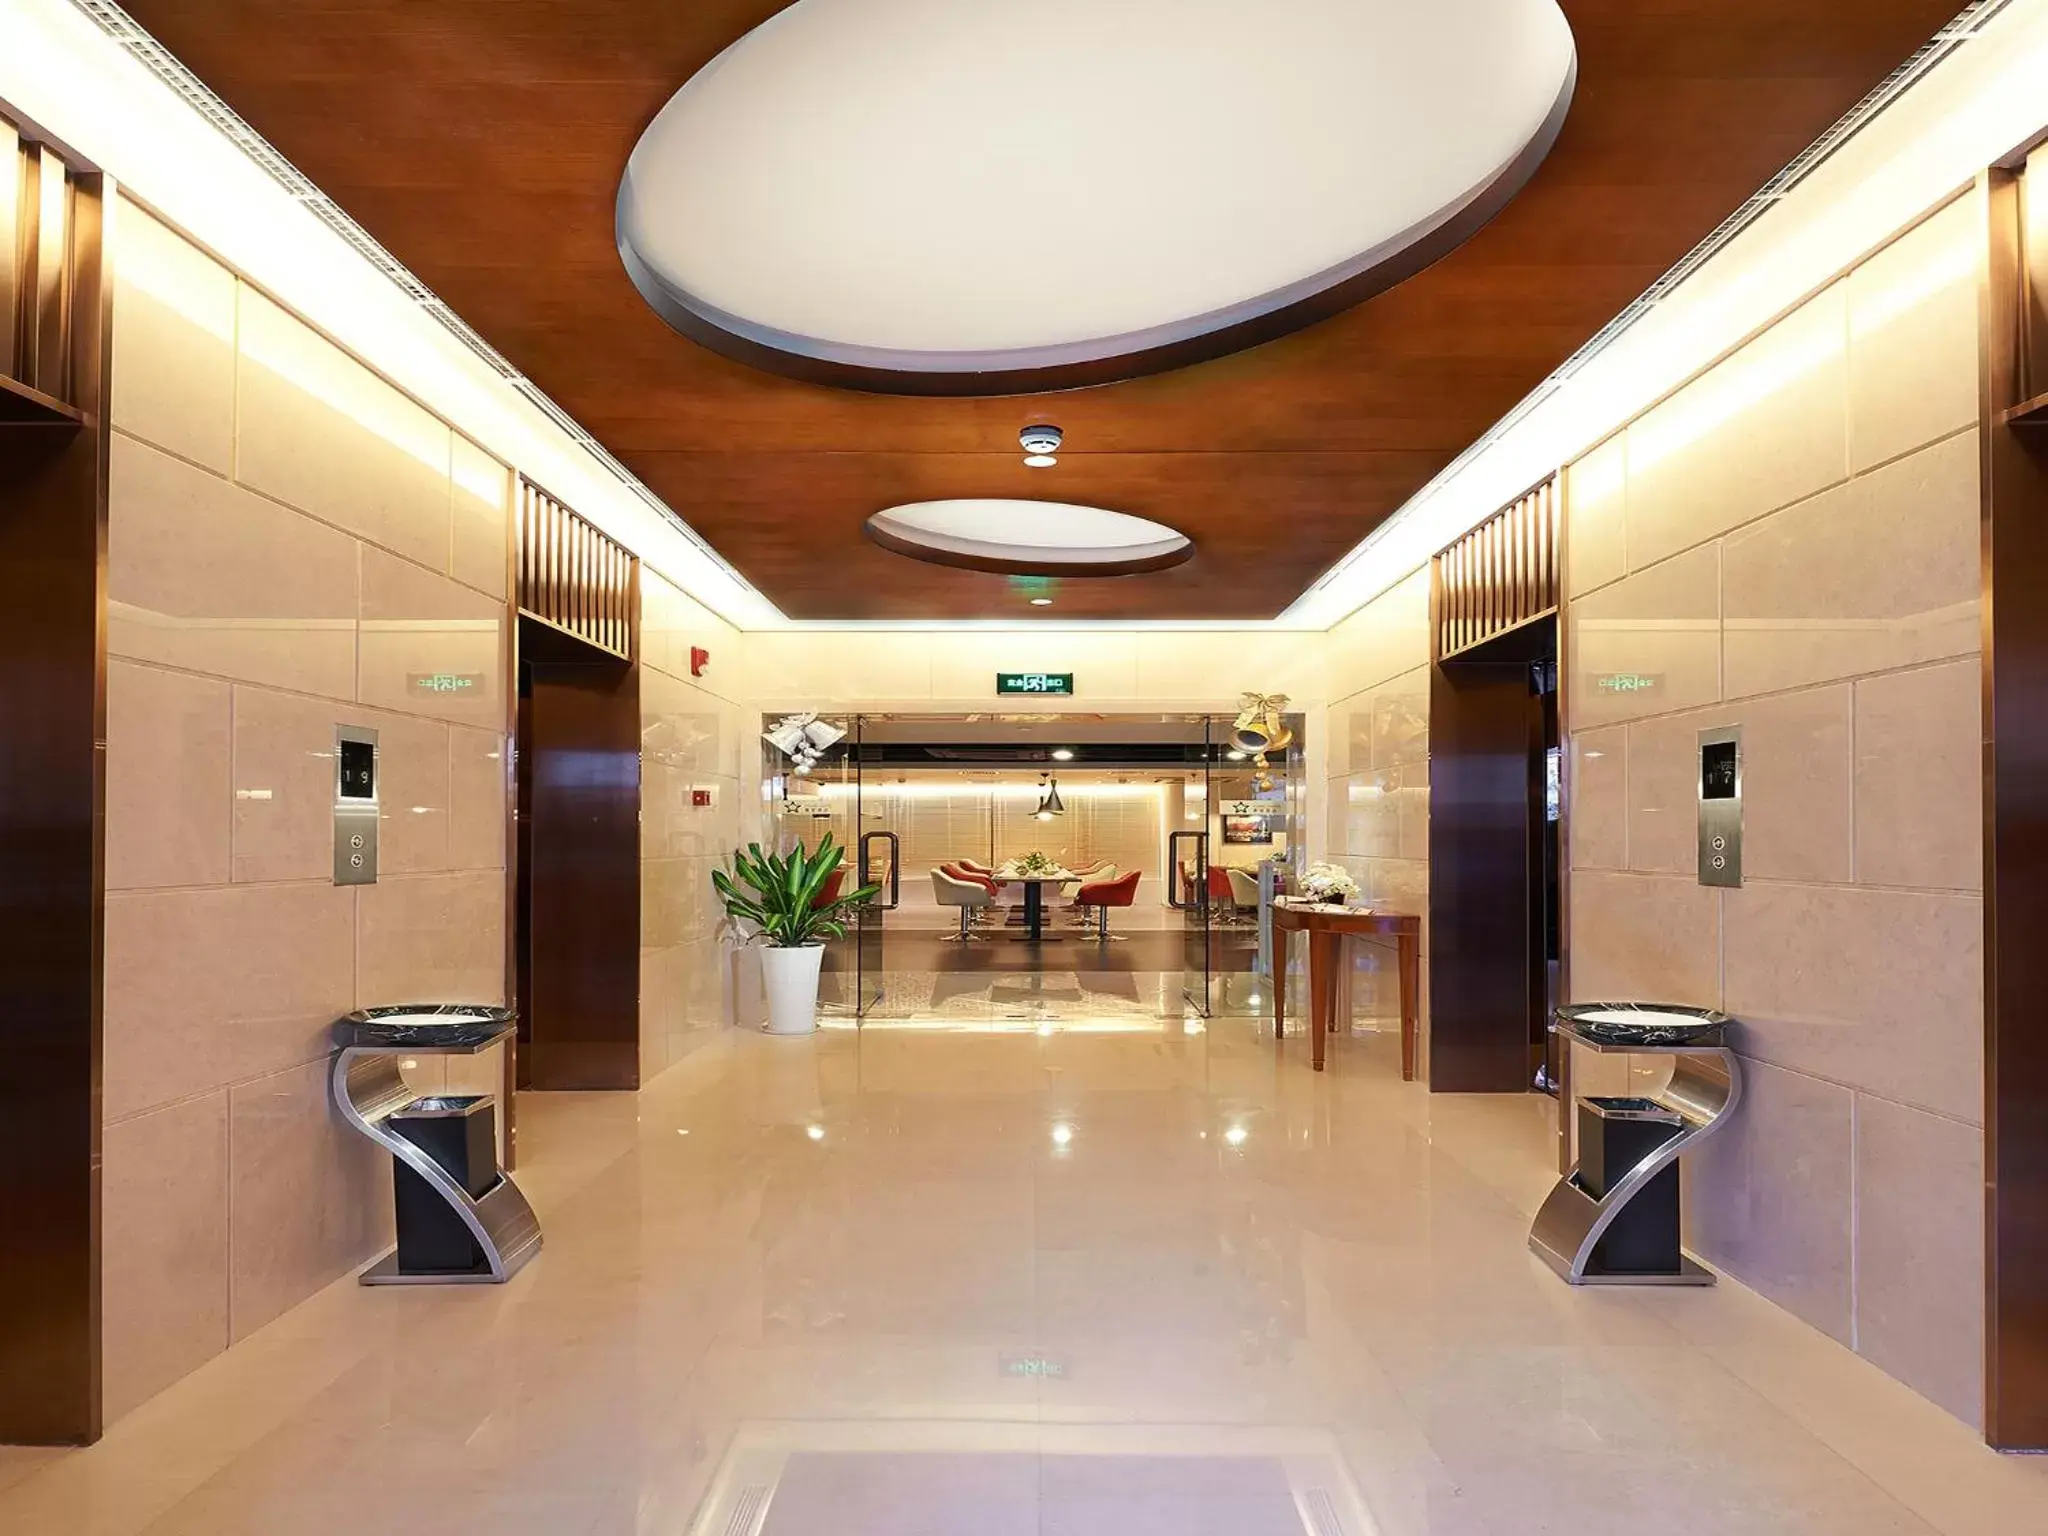 Lobby or reception, Lobby/Reception in Starr Hotel Shanghai (Shanghai Railway Station)